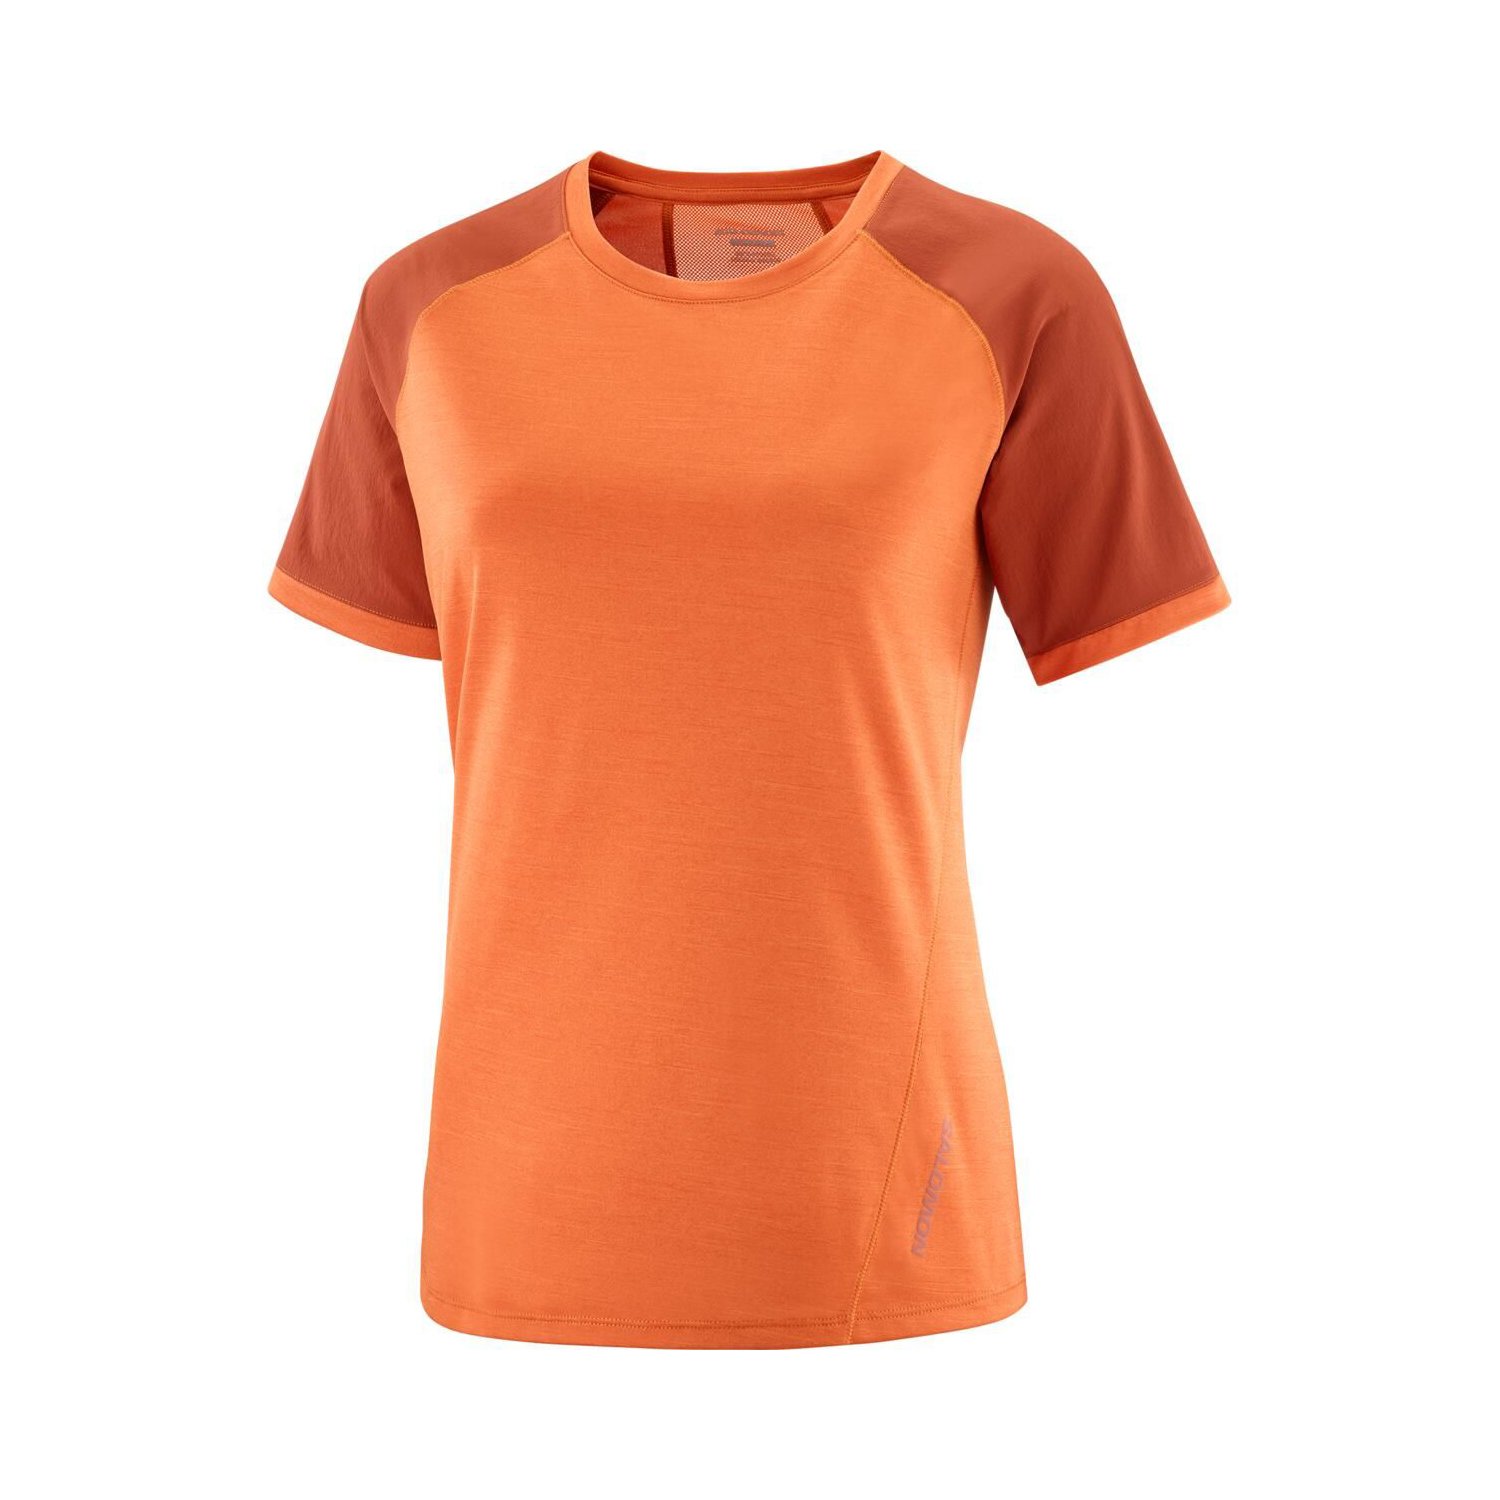 Salomon Outline Kadın Outdoor Koşu Tişört - Renkli - 1